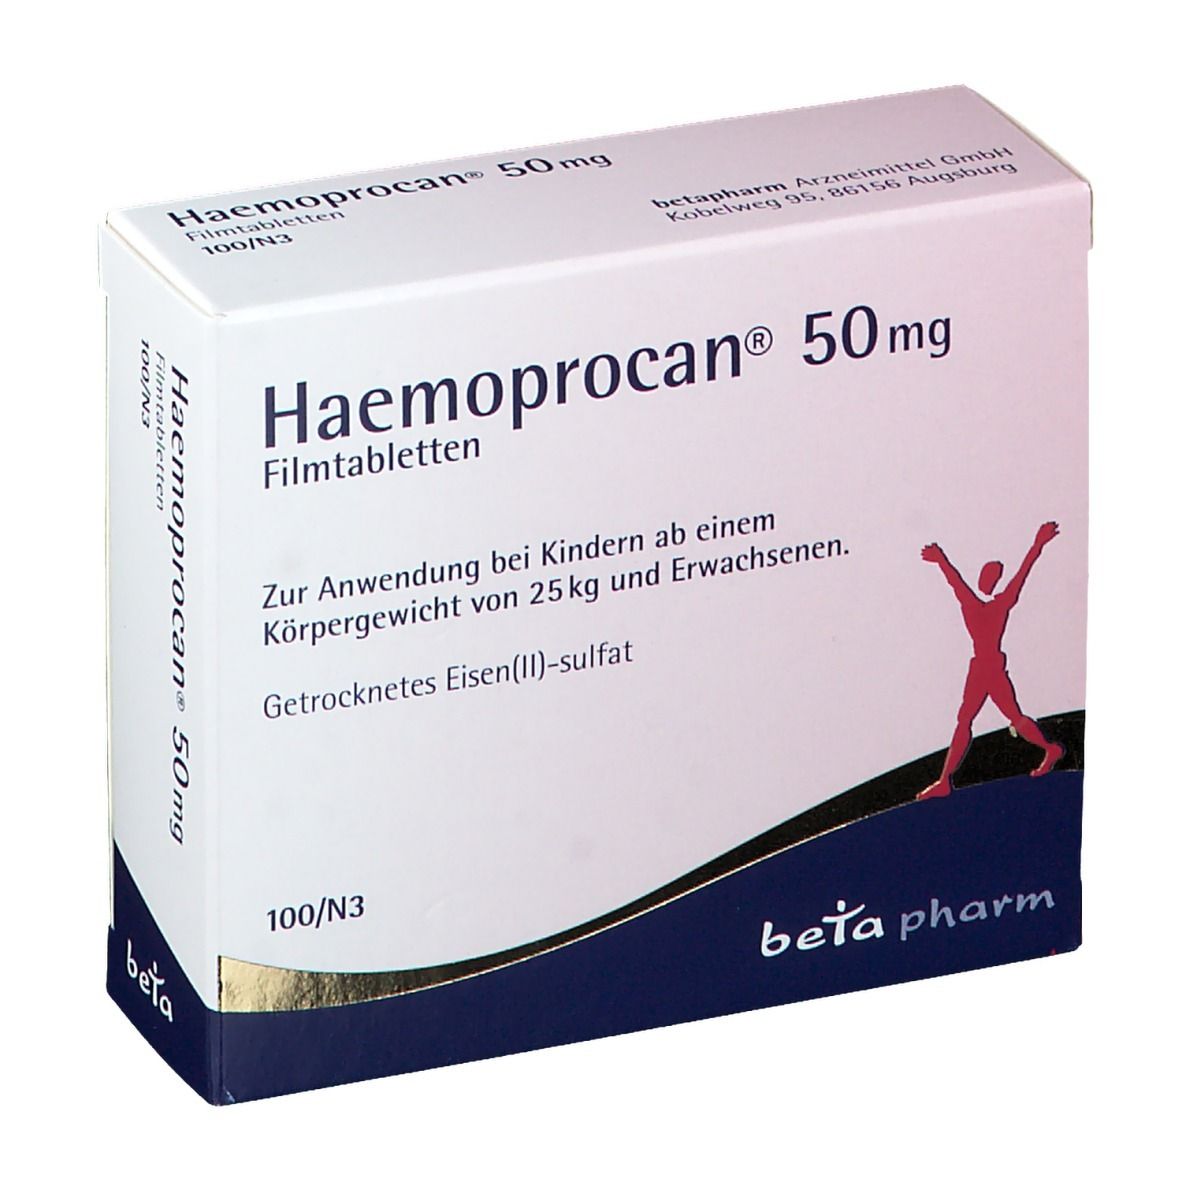 beta pharm Haemoprocan® 50 mg